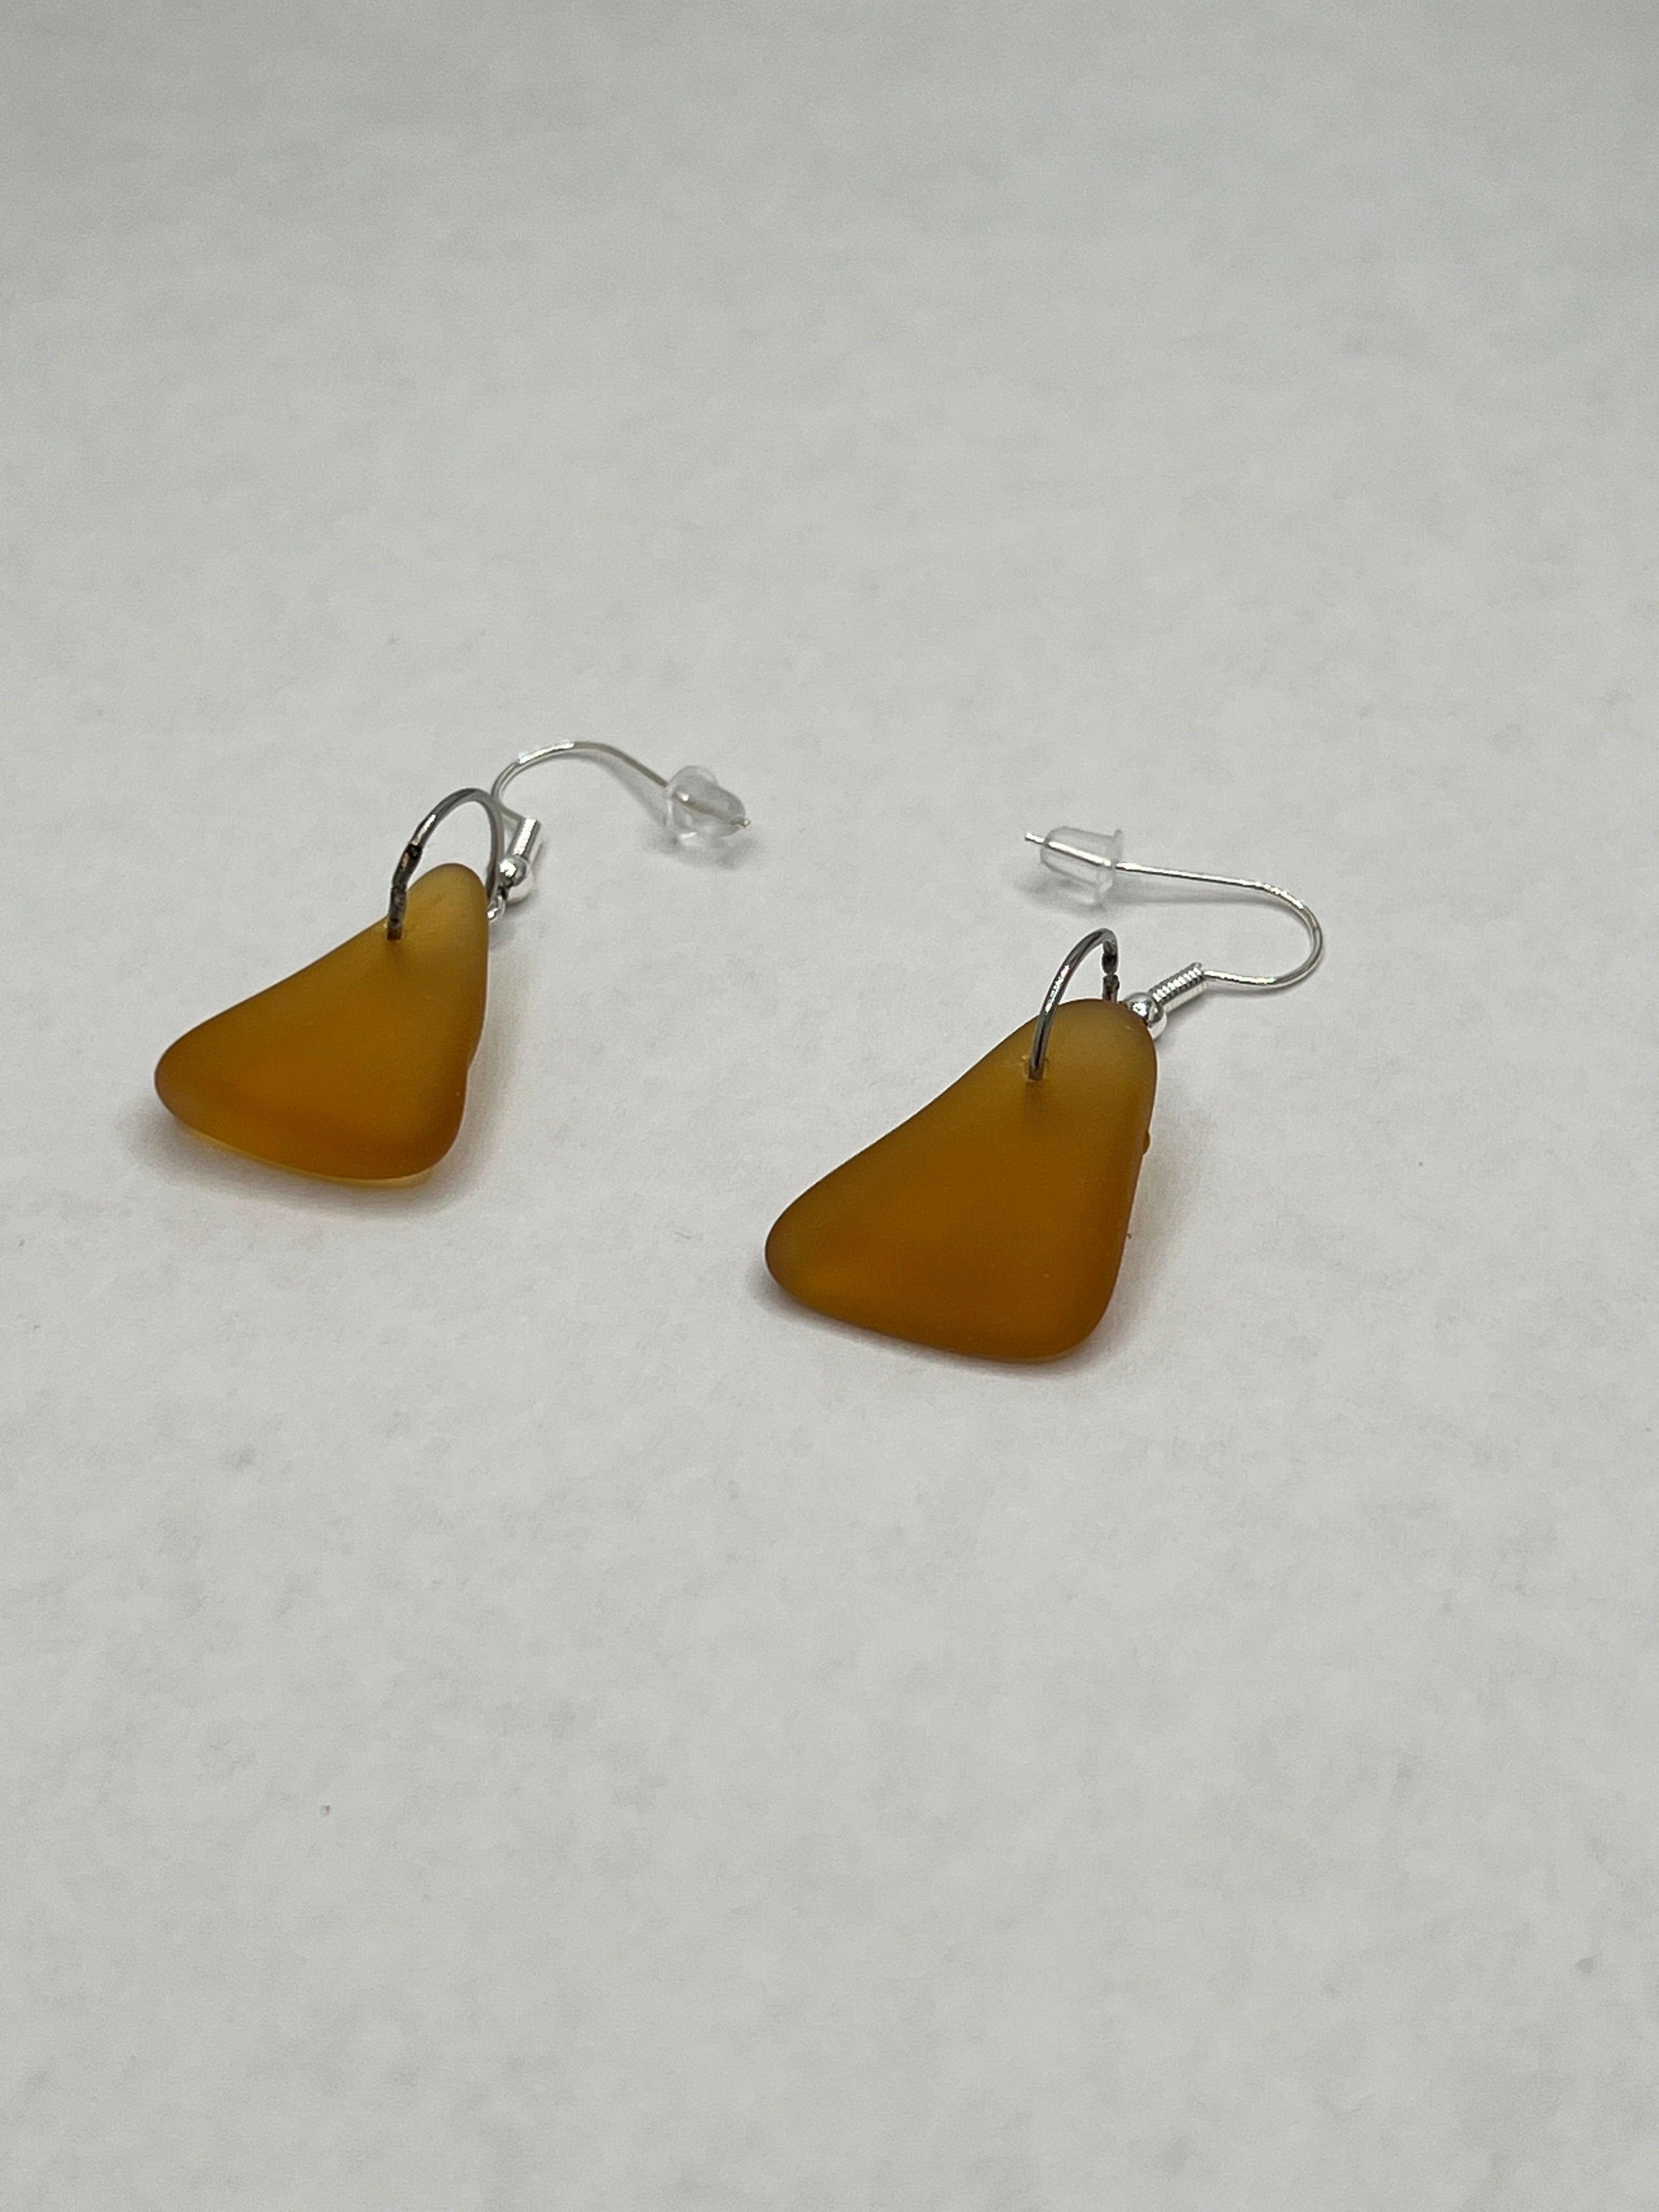 Stunning amber earrings for elegant women - buy now!